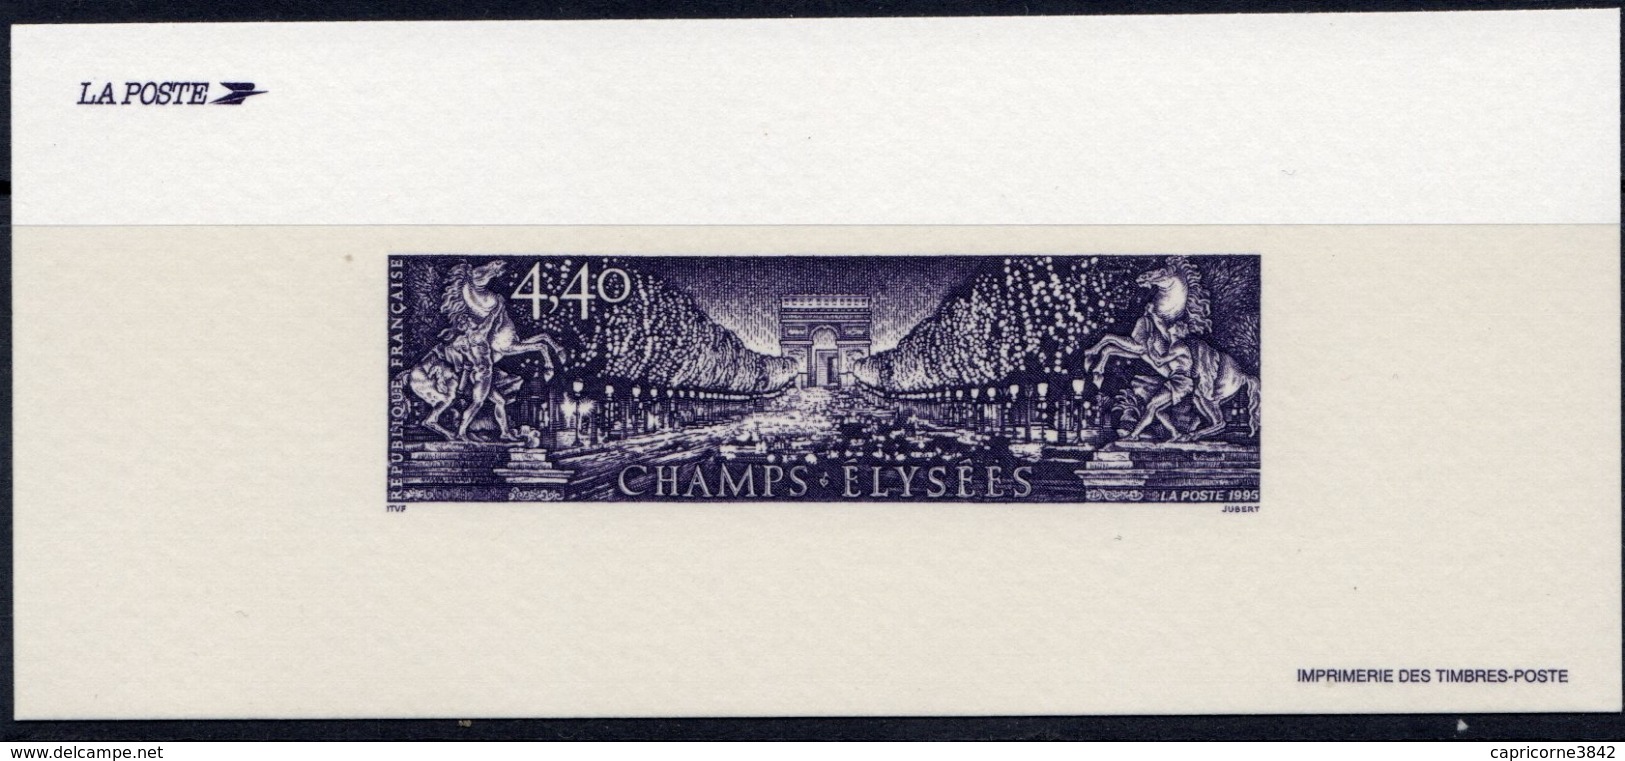 1995 - Epreuve Du Timbre "Avenue De Champs Elysées" (Tp N°2918) - Imprimé En Taille Douce - Luxury Proofs